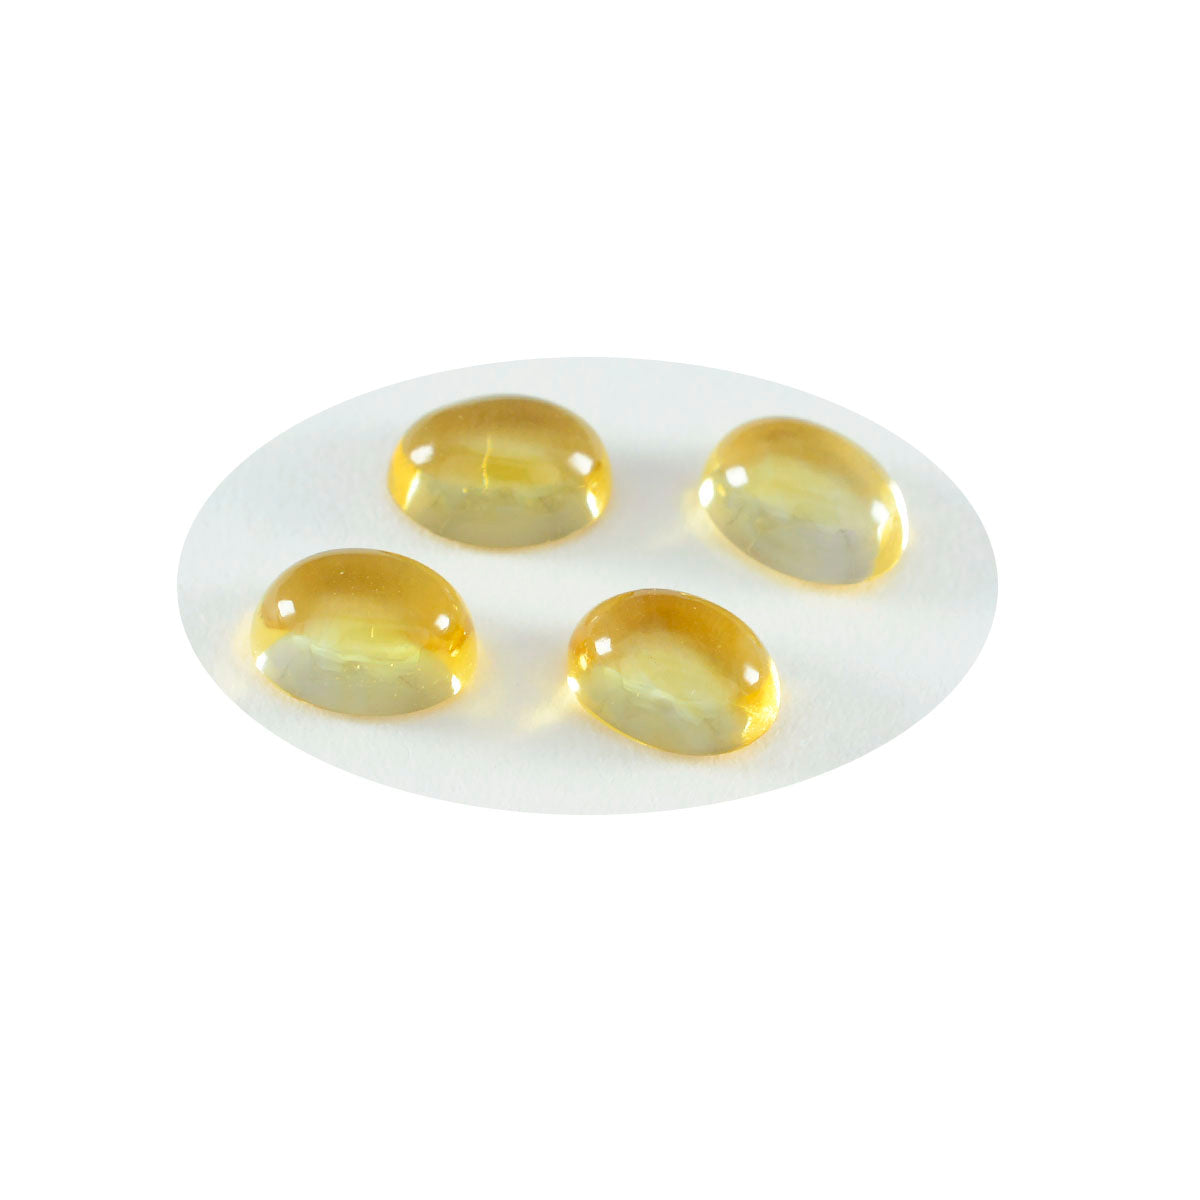 Riyogems 1PC gele citrien cabochon 5X7 mm ovale vorm mooie kwaliteit losse edelsteen